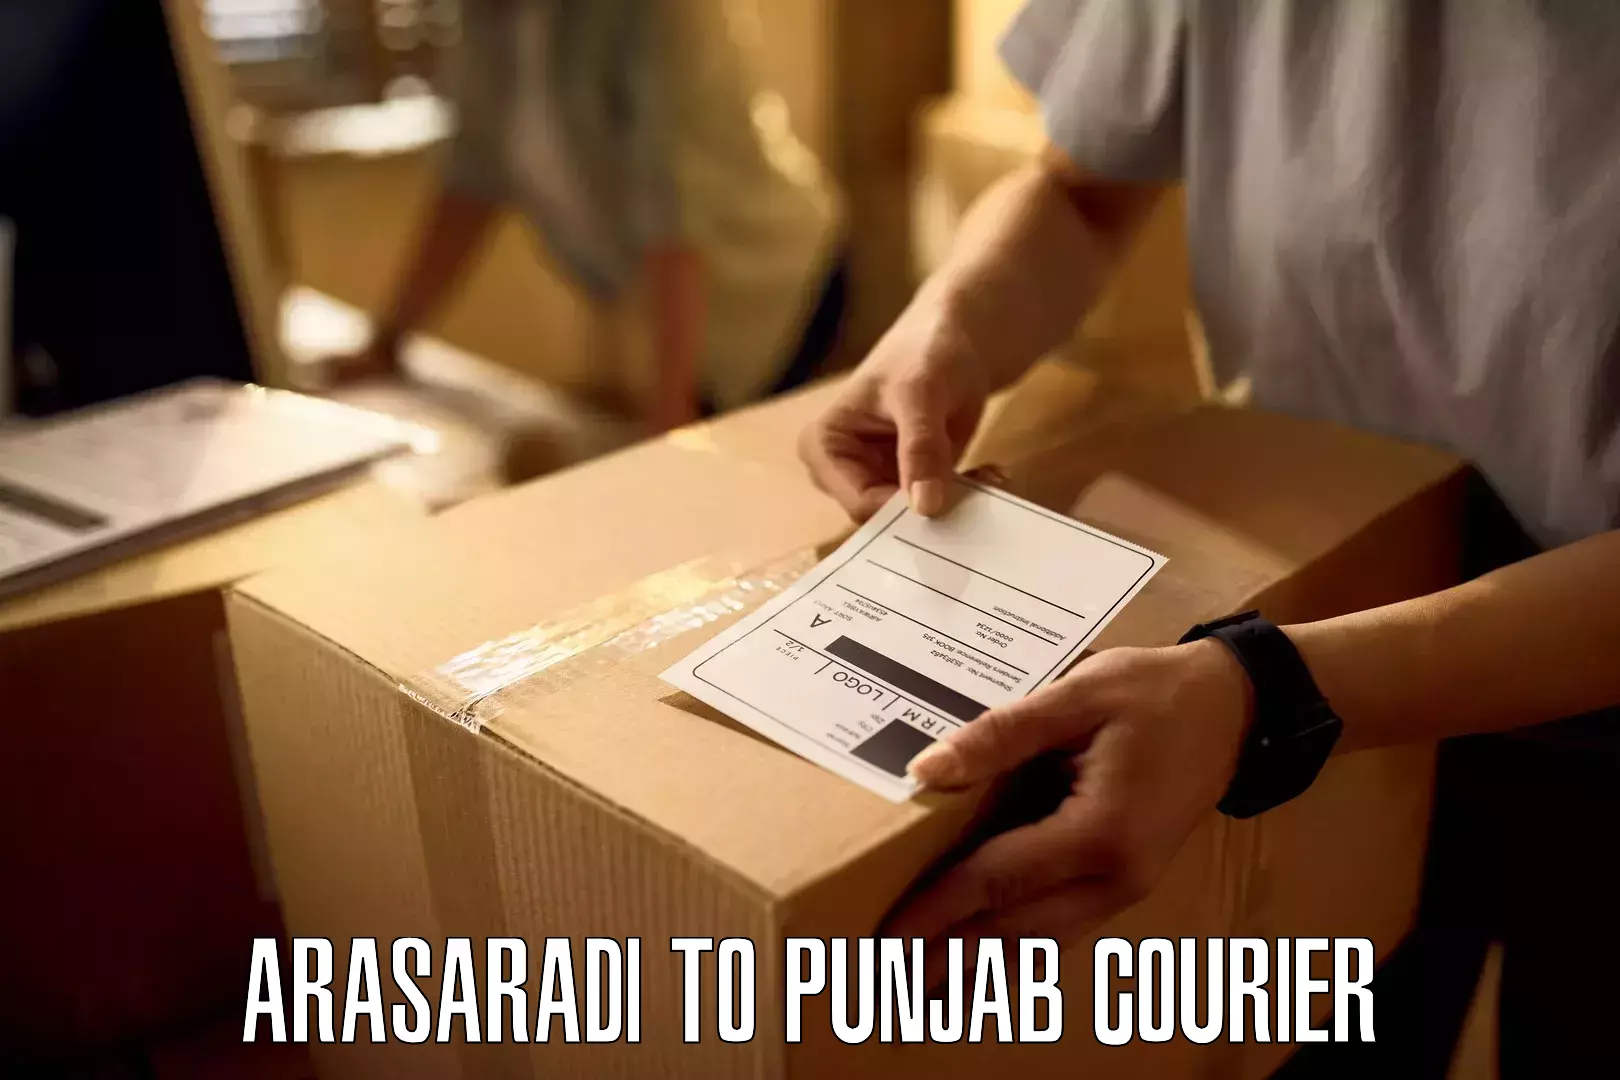 Punctual parcel services Arasaradi to Punjab